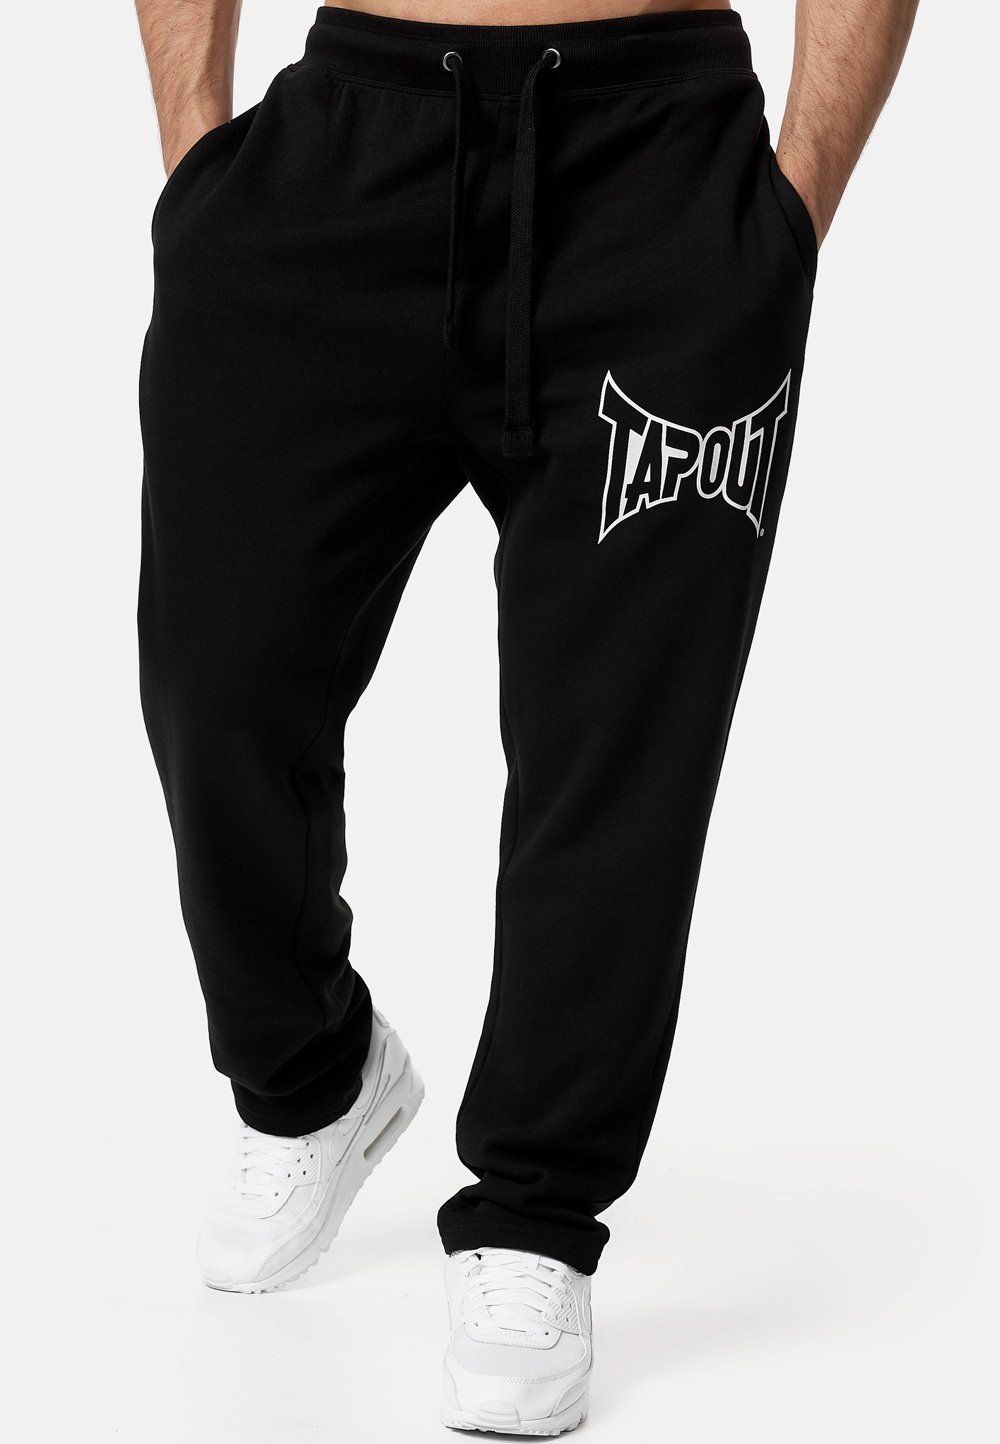 Tapout Men's jogging pants regular fit